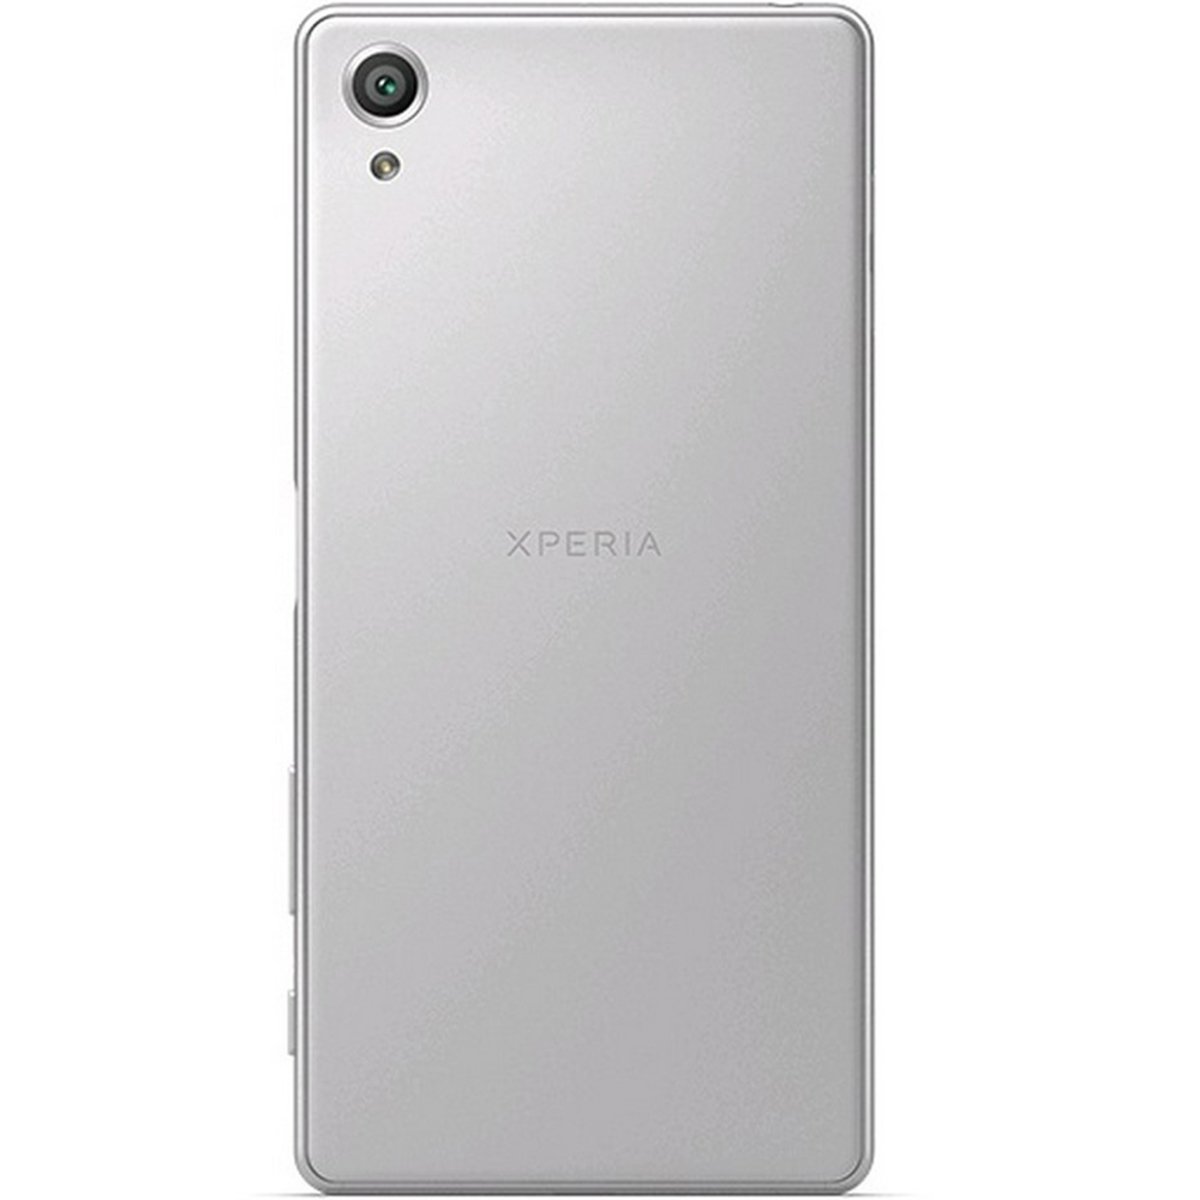 Sony Xperia X F5122 64GB White